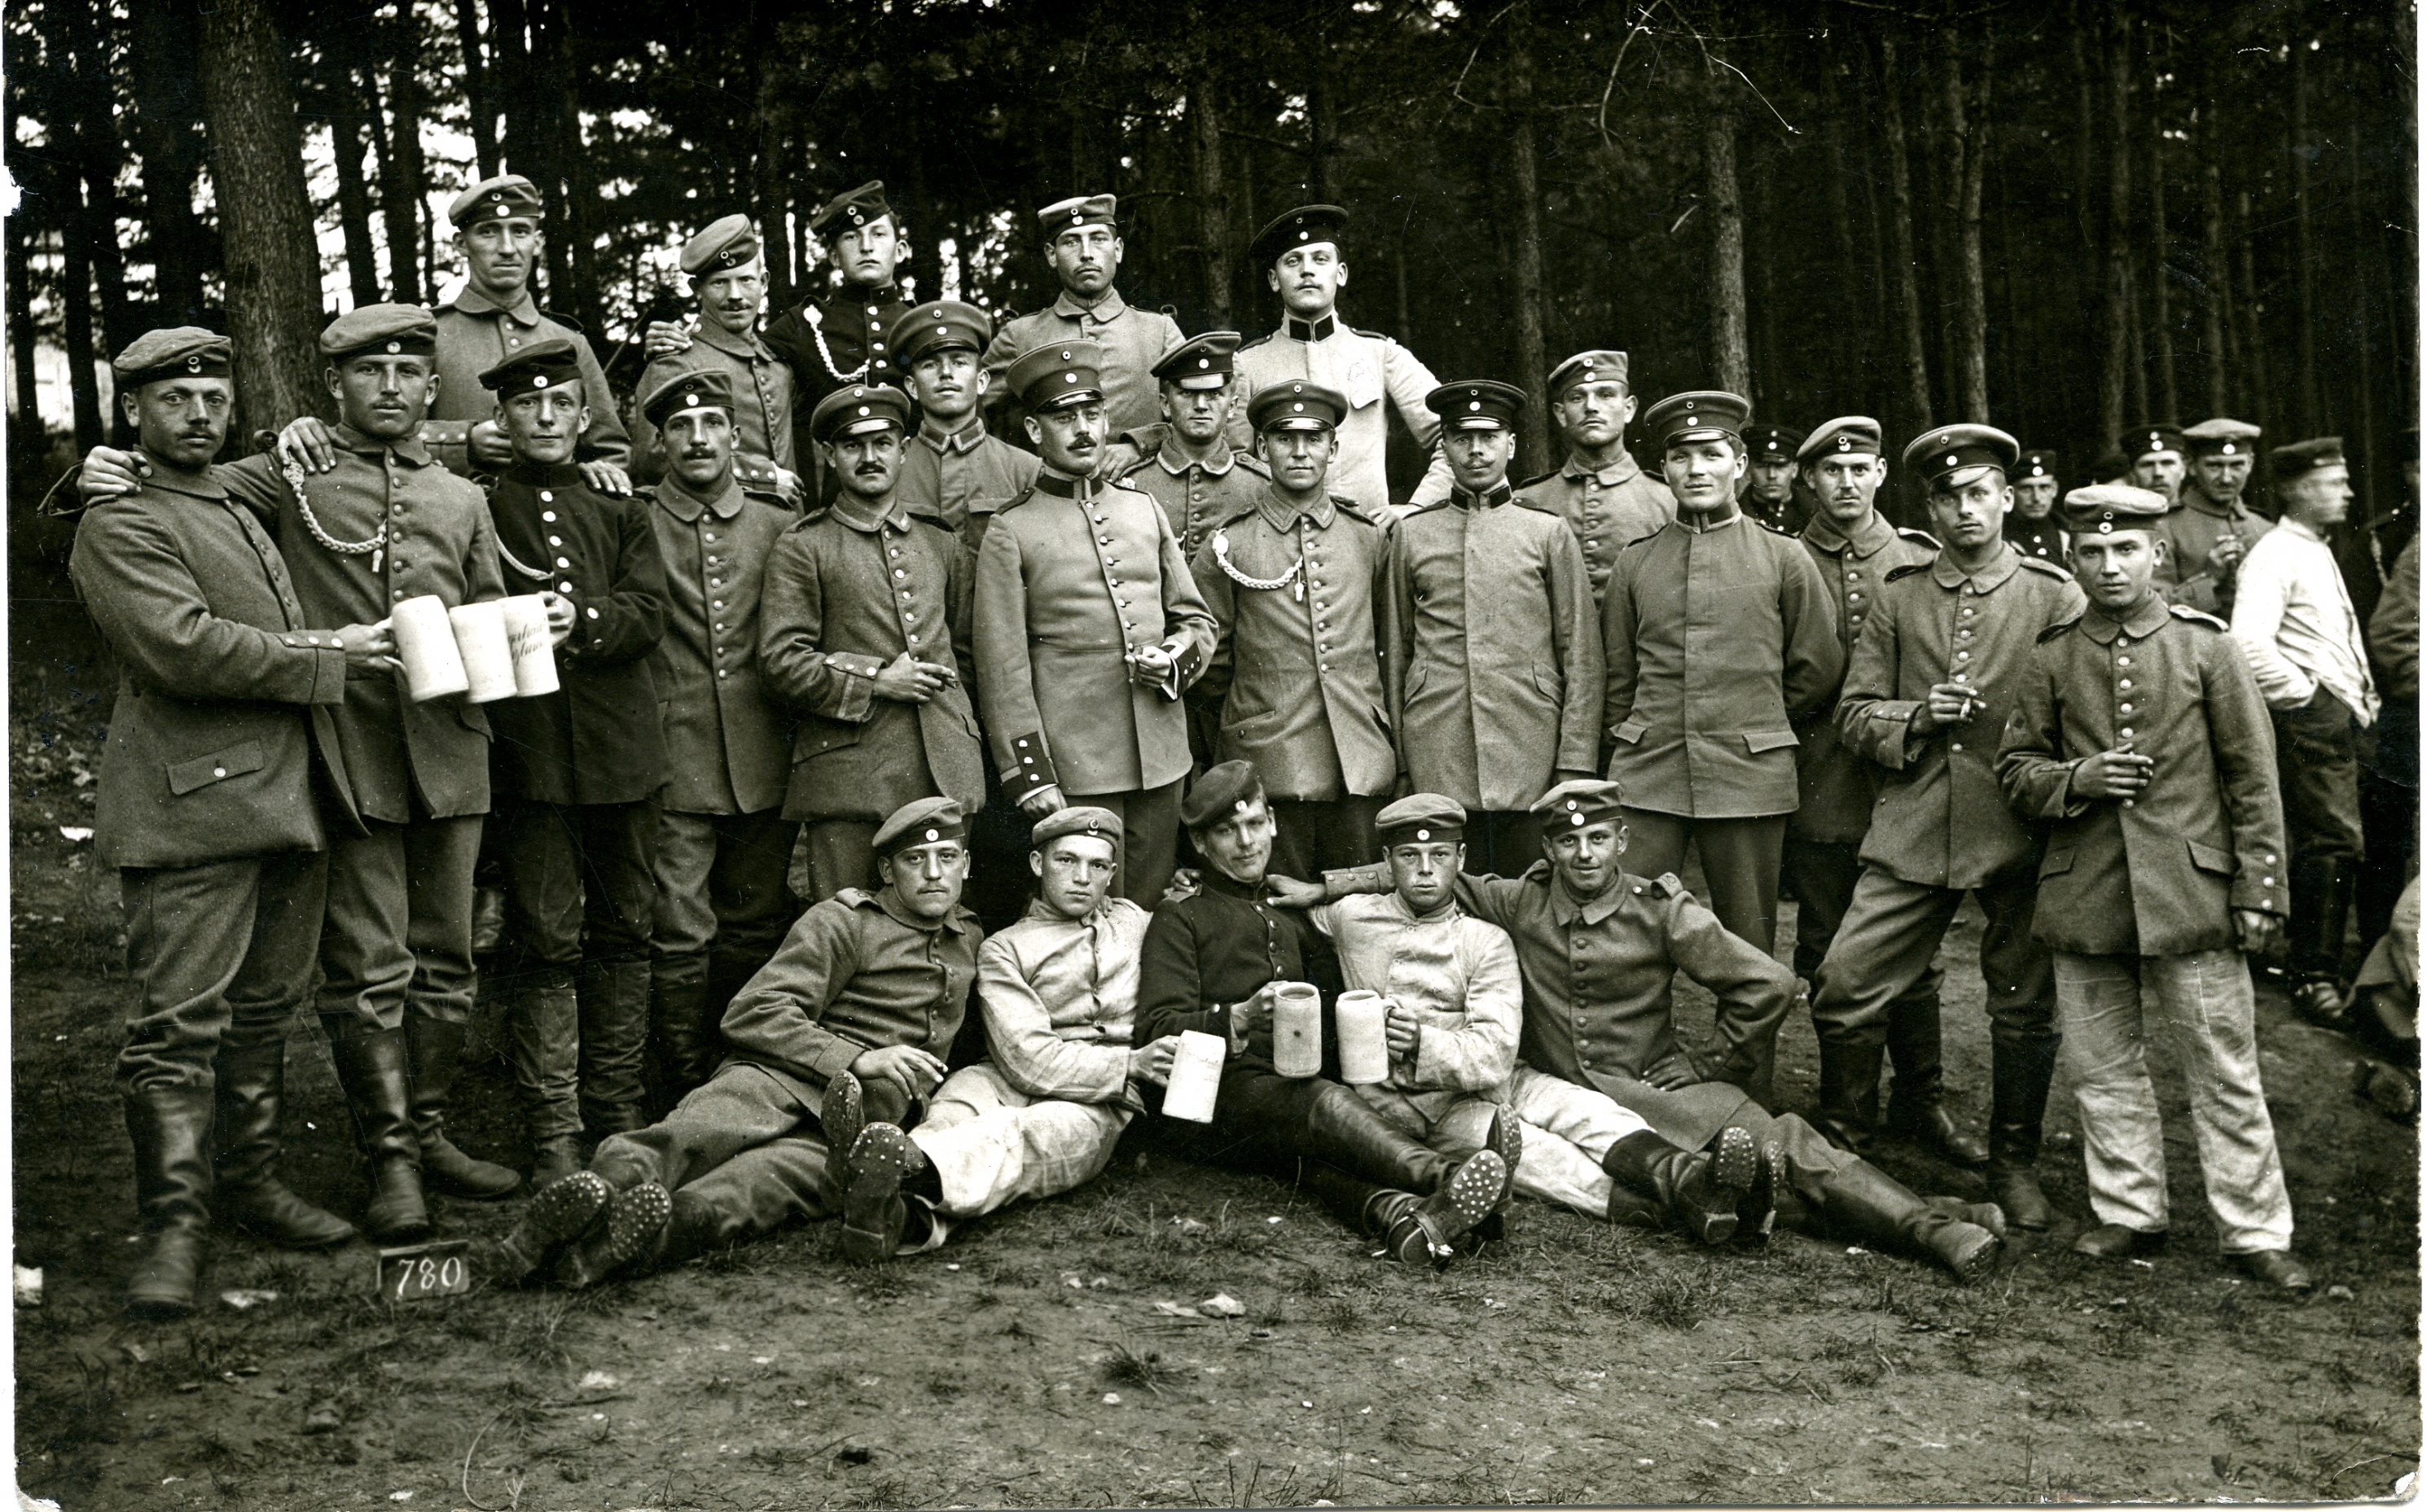 Fotopostkarte "Gruppenportrait unbekannte Soldaten" (Historisches Museum der Pfalz, Speyer CC BY)